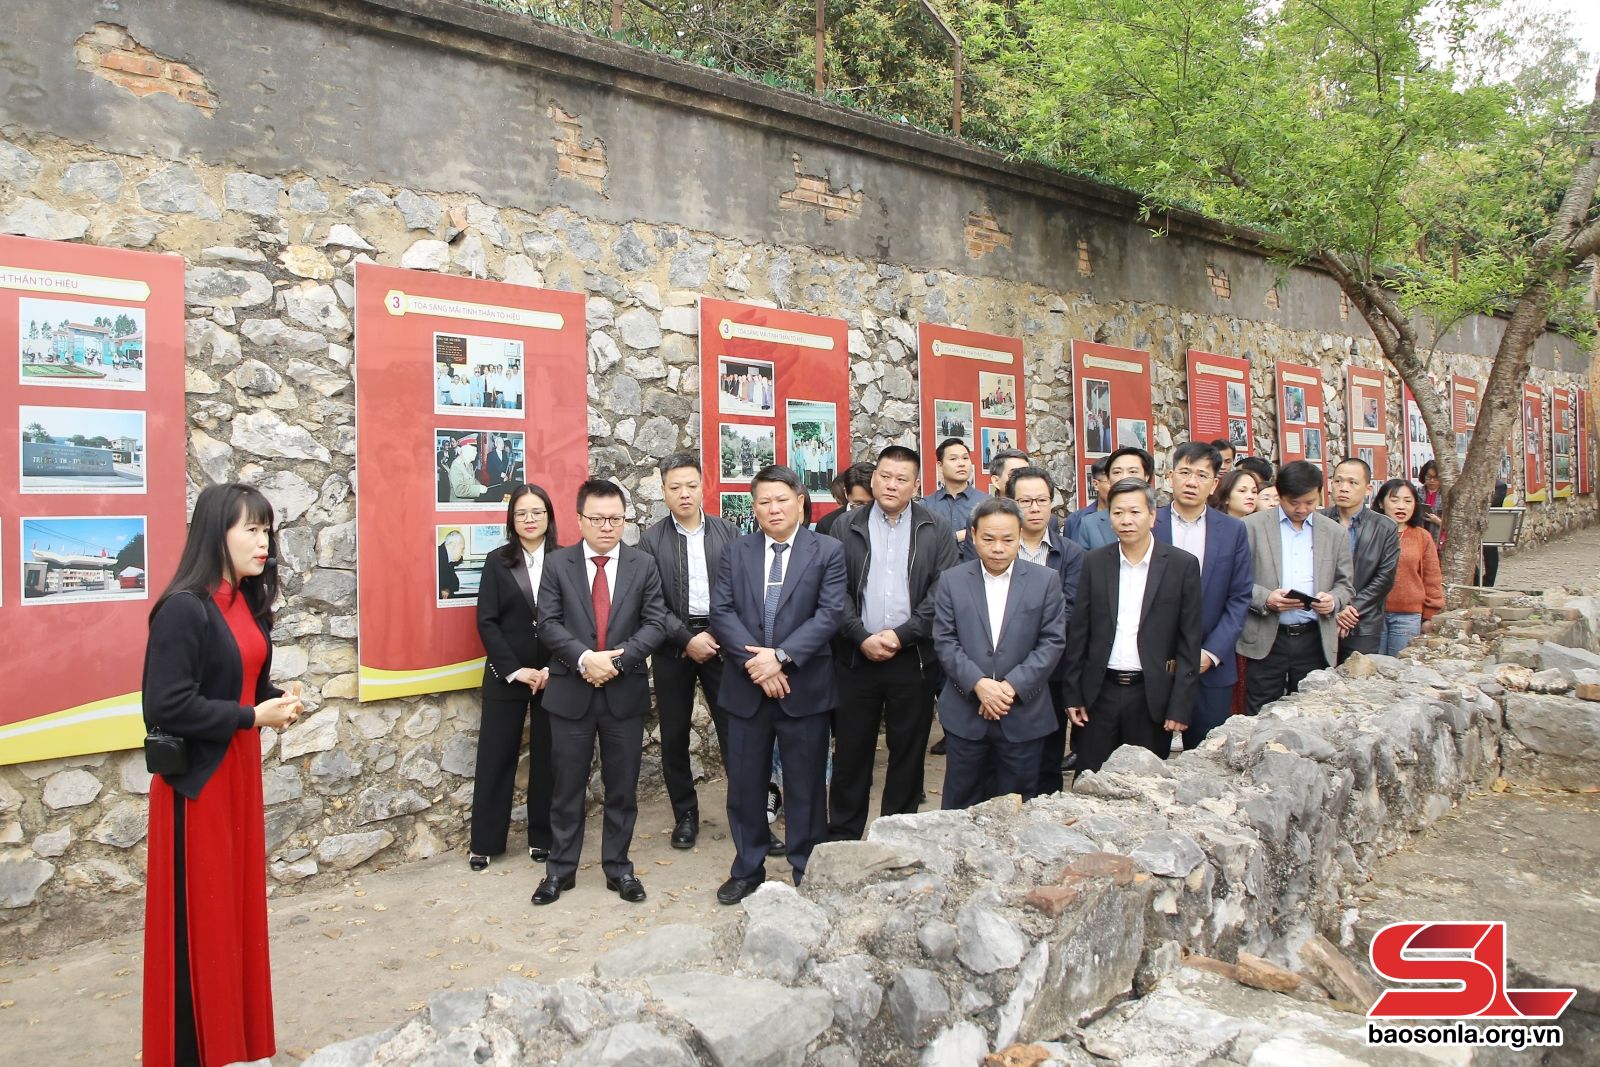 Đoàn công tác Báo Nhân dân và lãnh đạo tỉnh Sơn La thăm Khu di tích Quốc gia đặc biệt Nhà tù Sơn La.